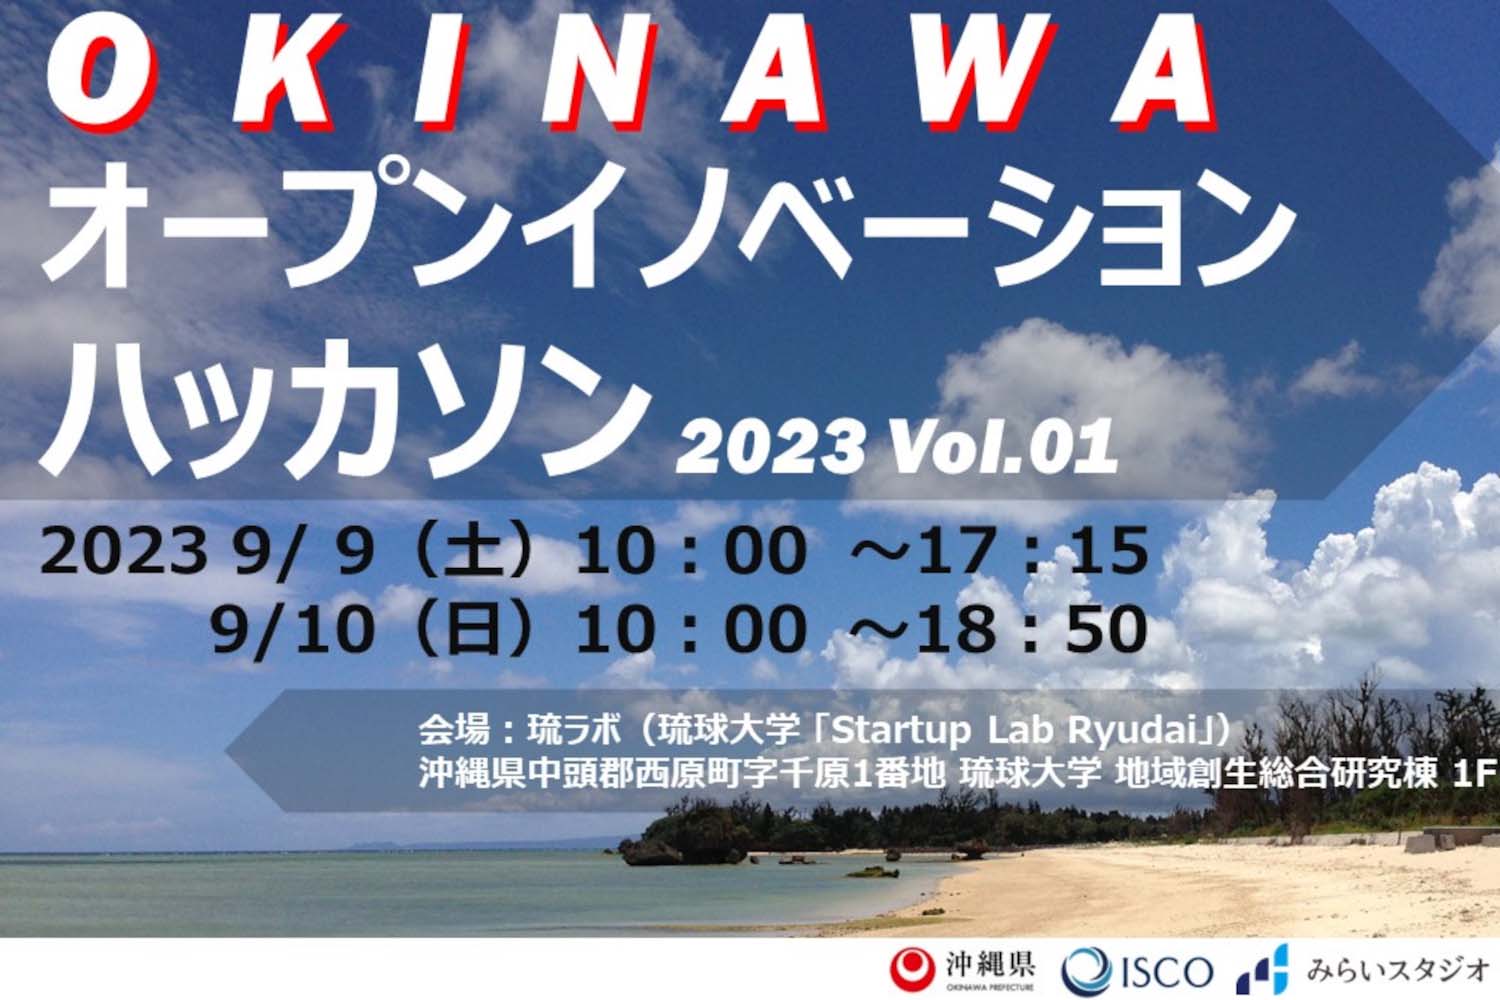 OKINAWAオープンイノベーションハッカソン